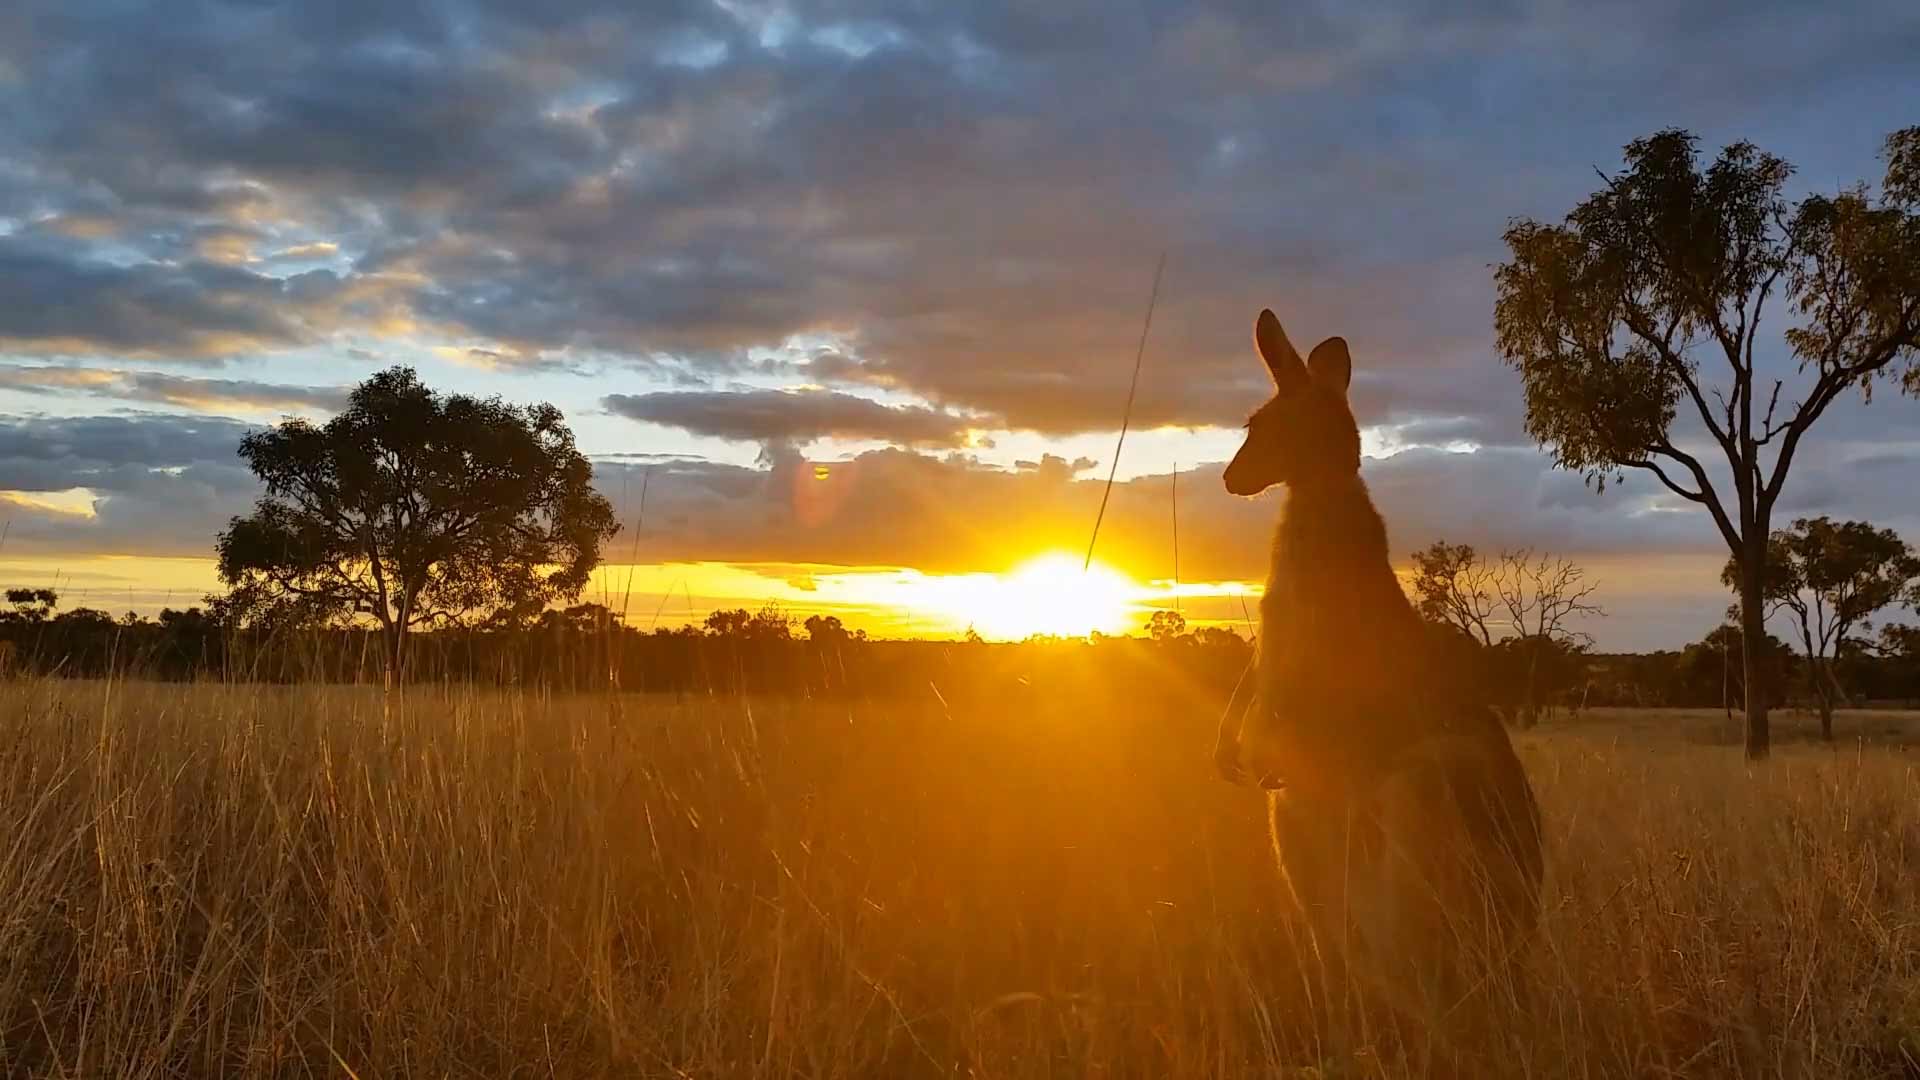 Australian's Outback region